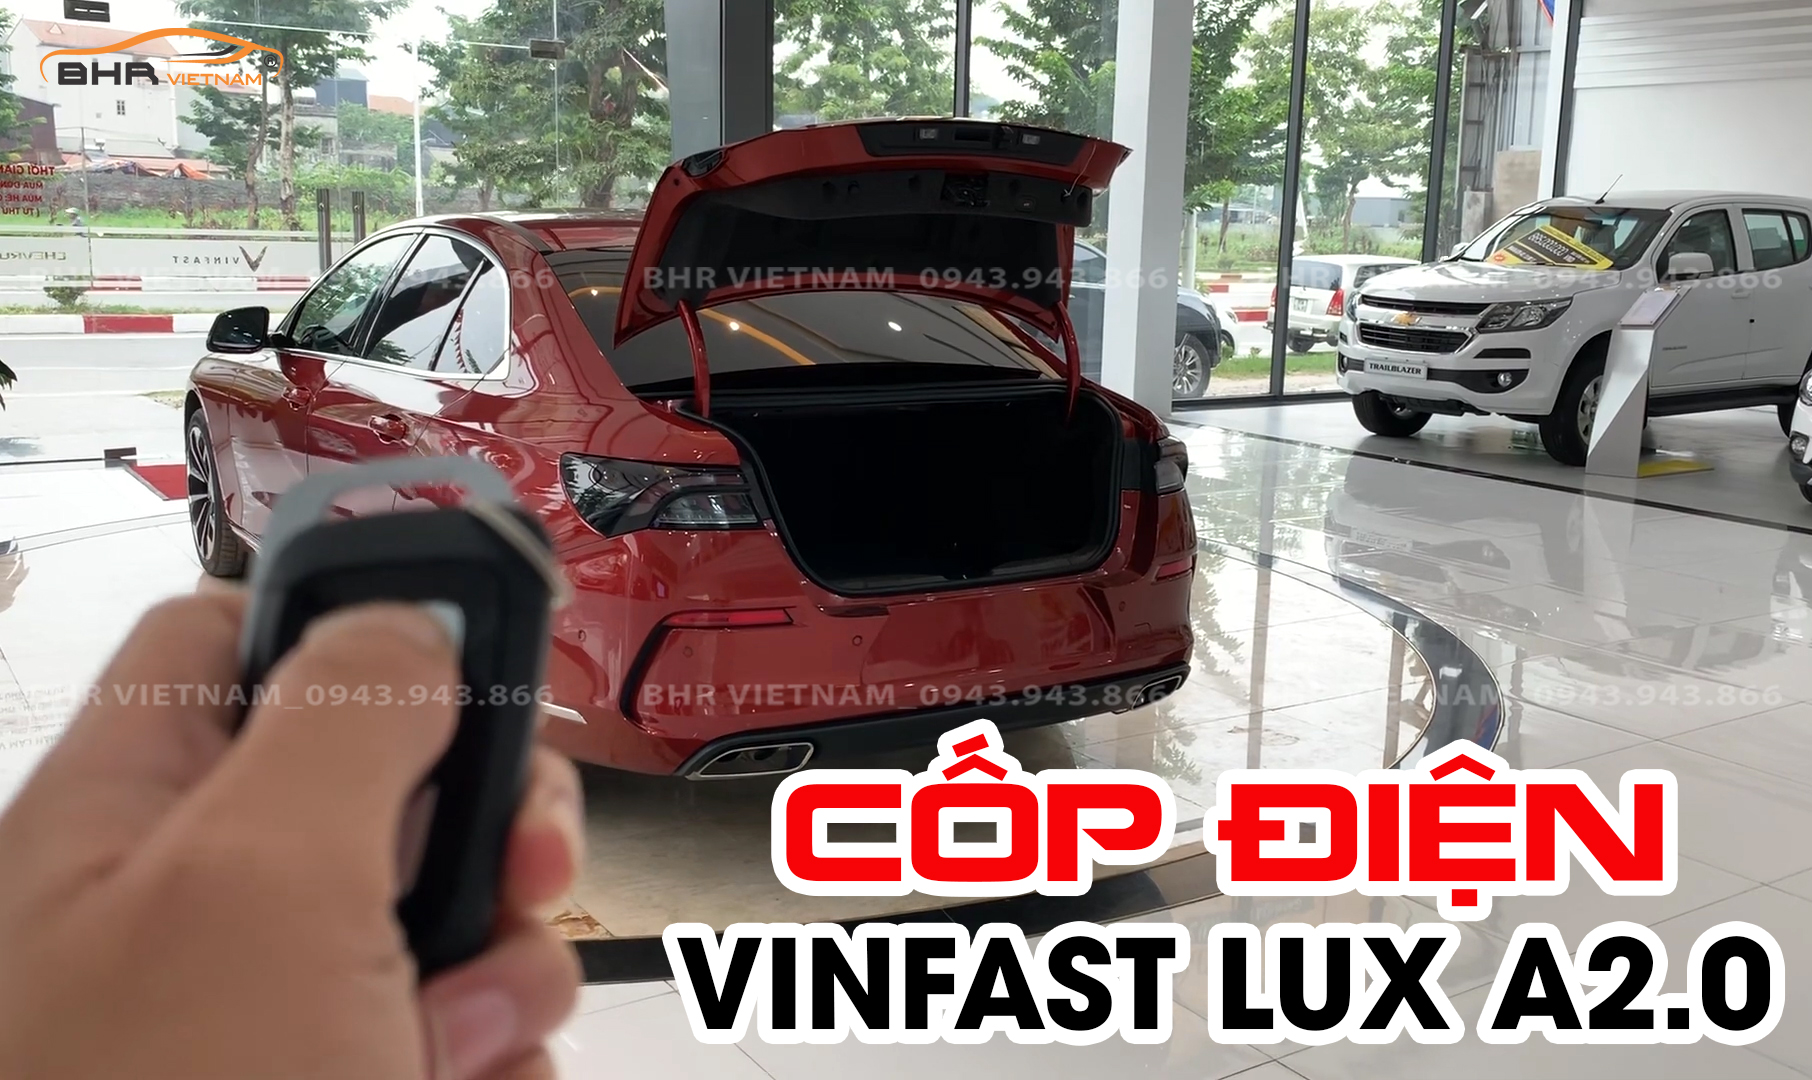 Độ cốp điện Perfec Car thương hiệu cao cấp, uy tín cho Vinfast Lux A